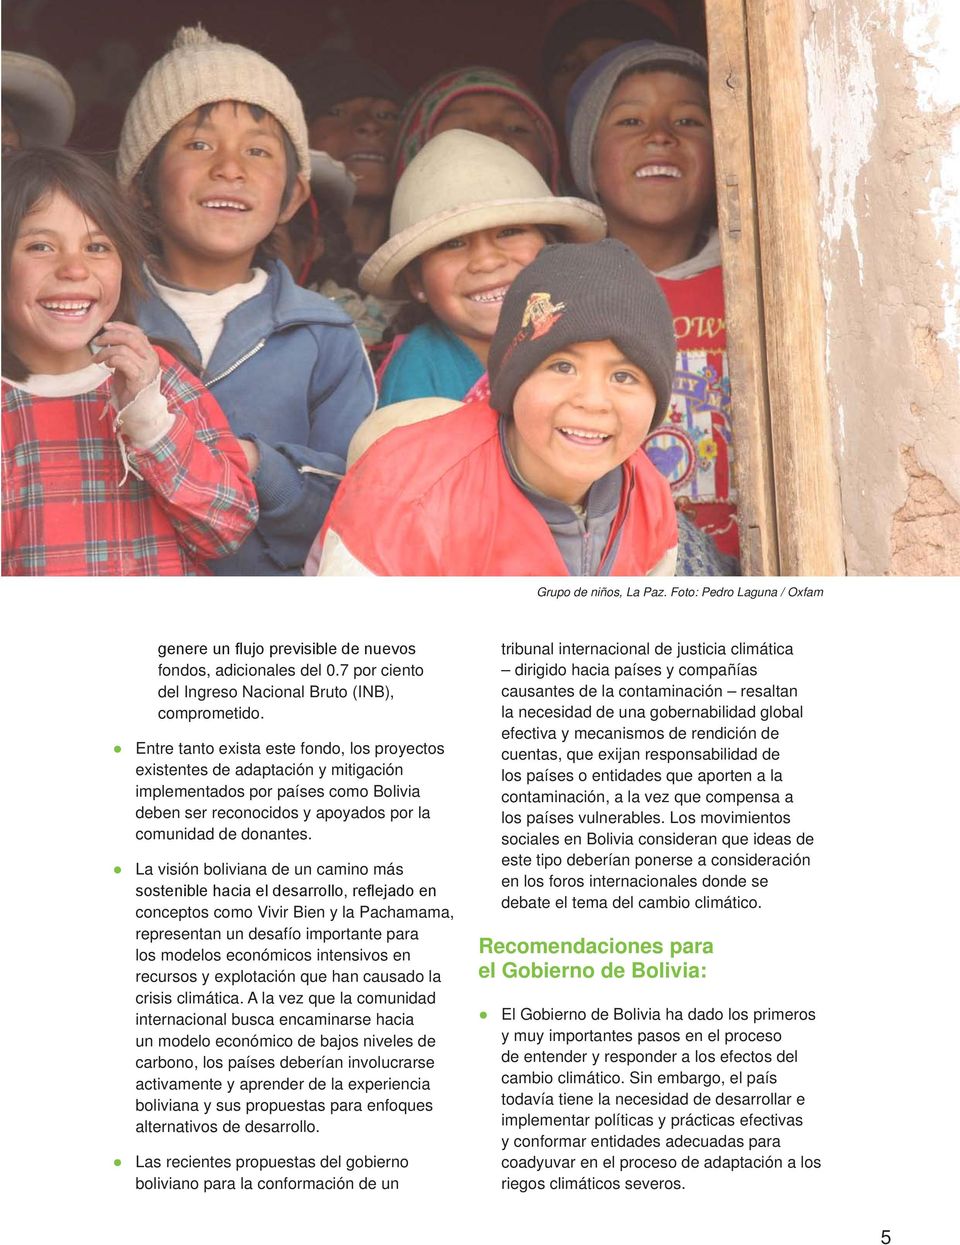 La visión boliviana de un camino más sostenible hacia el desarrollo, reflejado en conceptos como Vivir Bien y la Pachamama, representan un desafío importante para los modelos económicos intensivos en